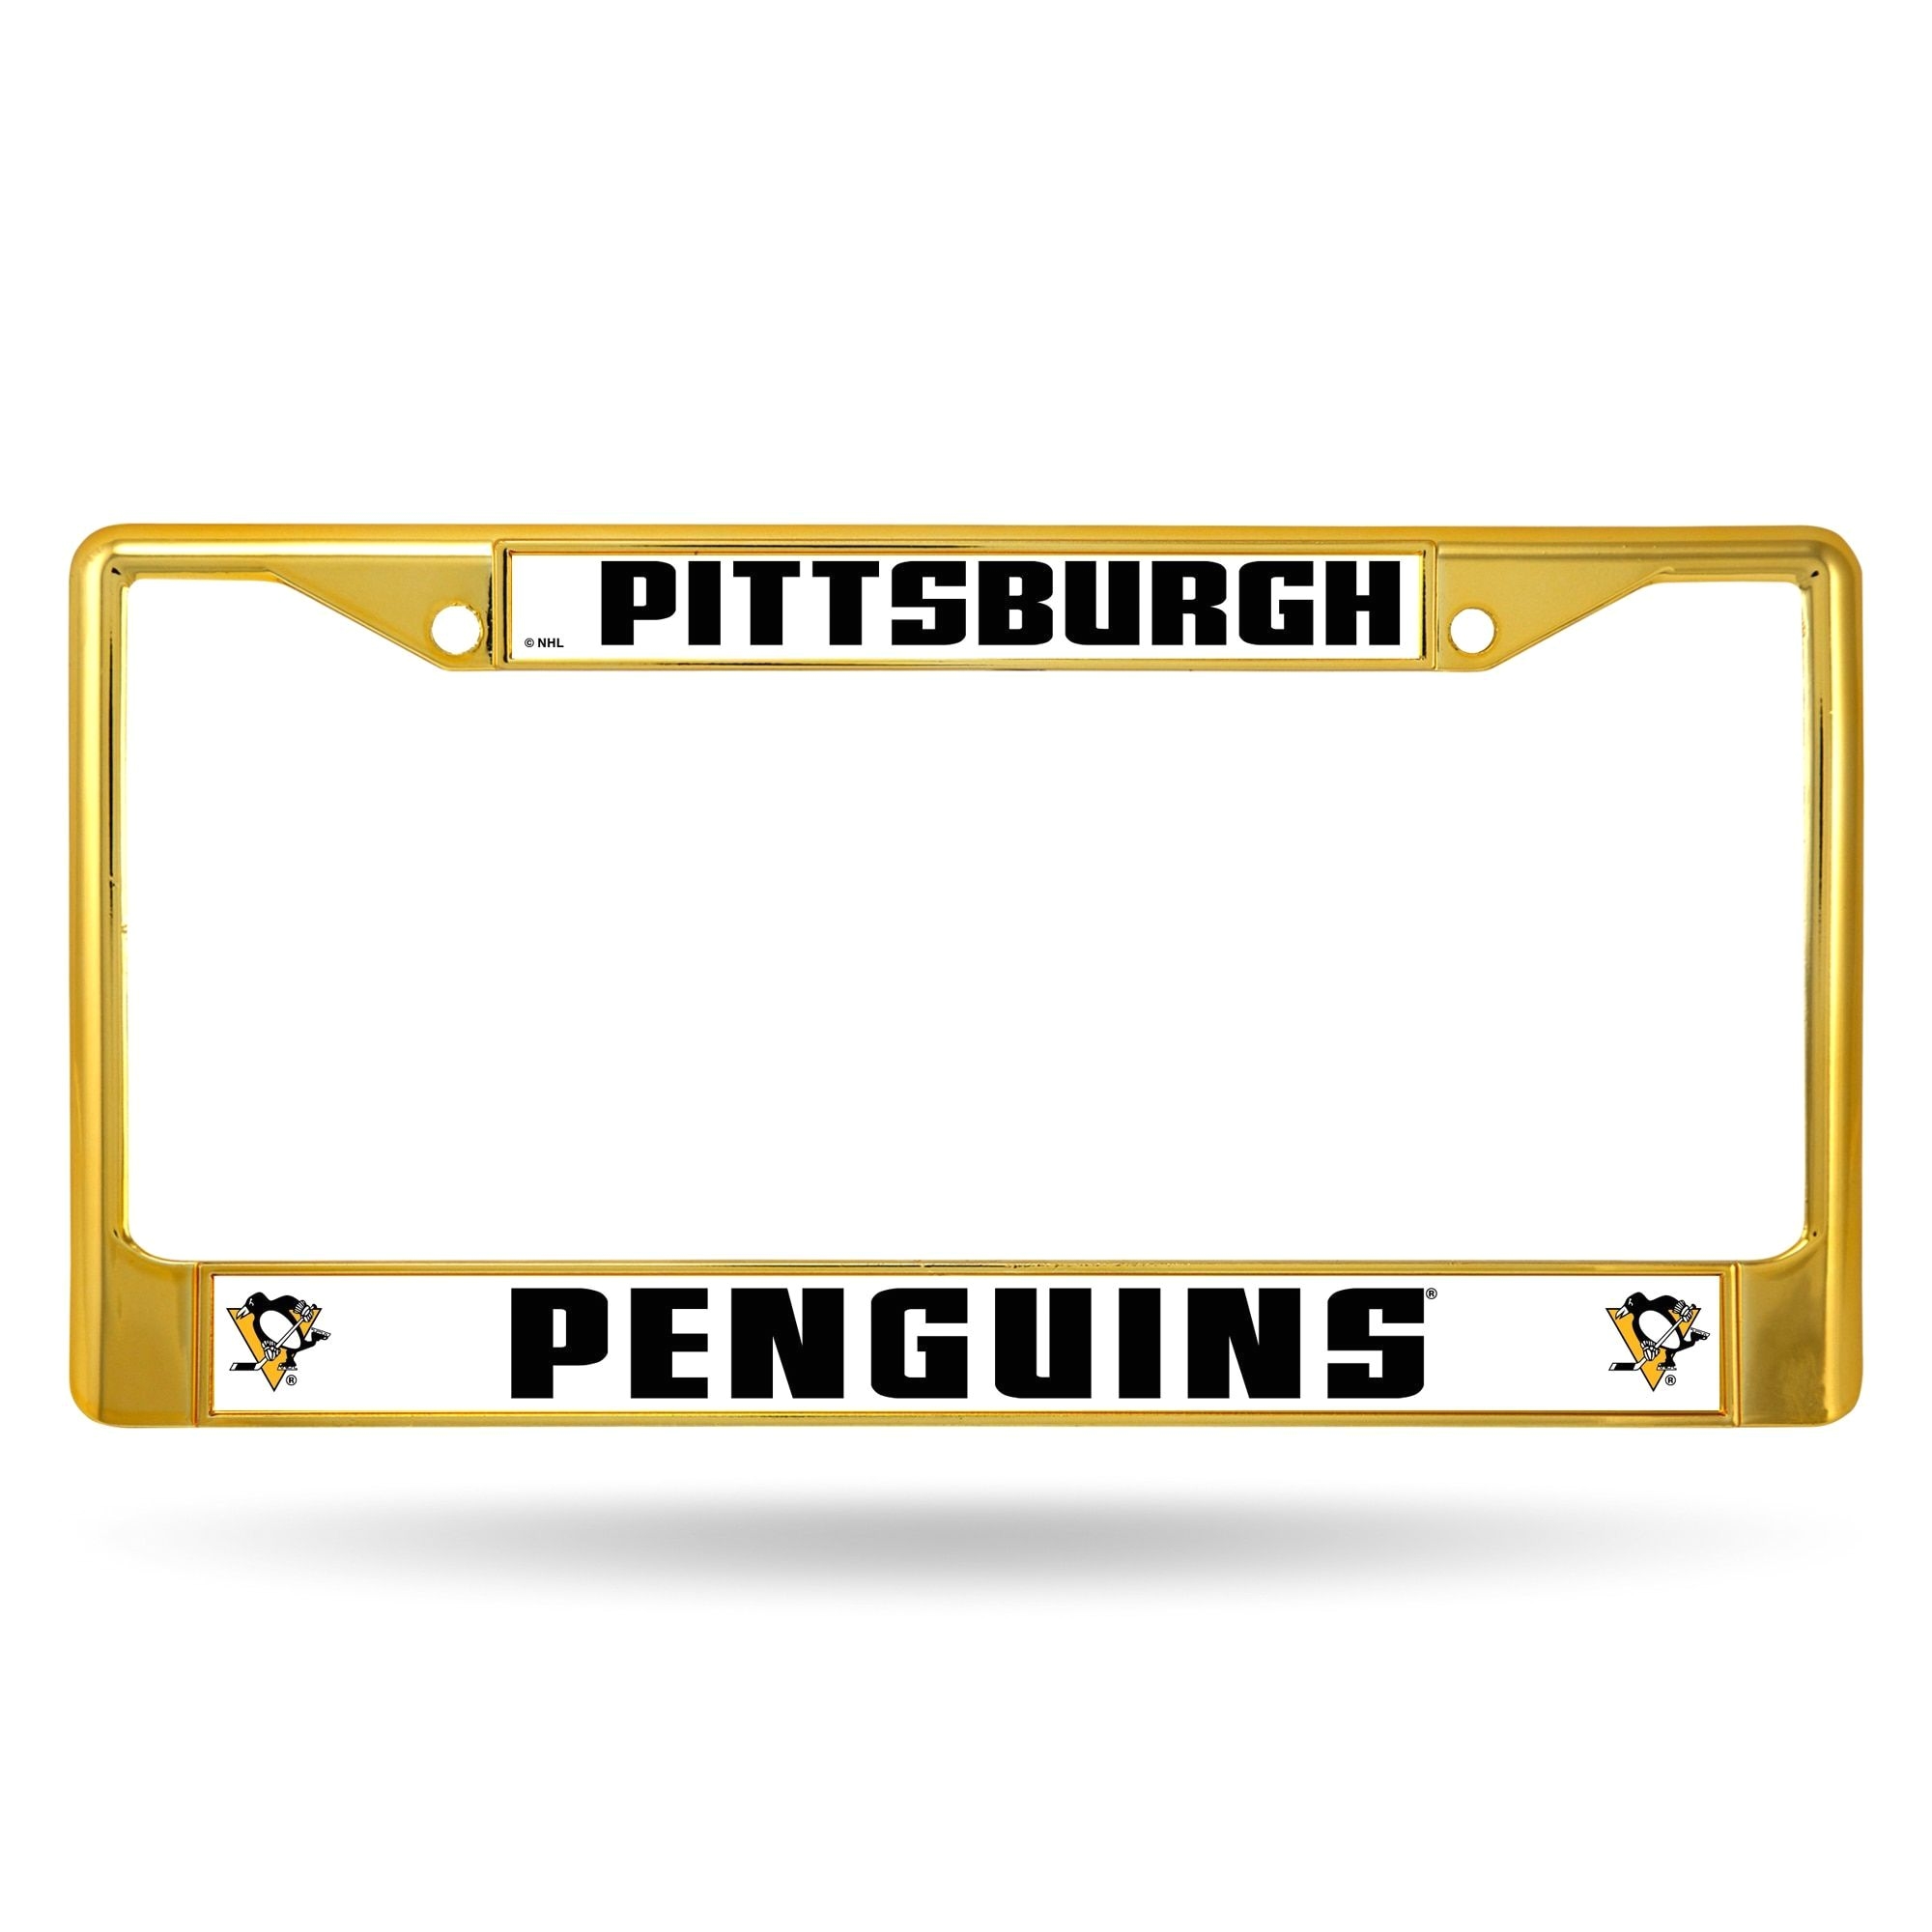 pittsburgh penguins nhl gold color license plate frame